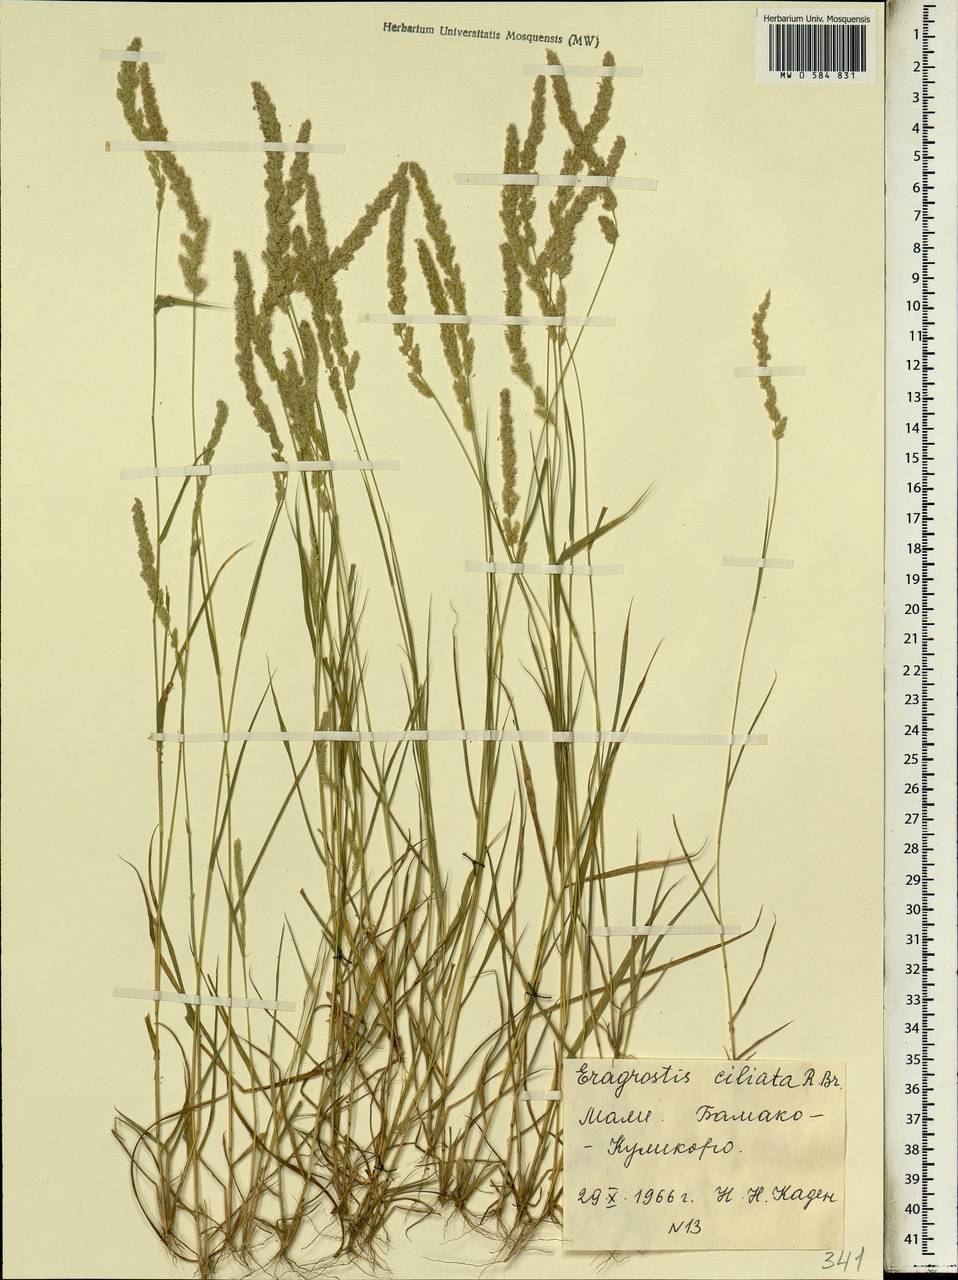 Eragrostis ciliaris (L.) R.Br., Africa (AFR) (Mali)